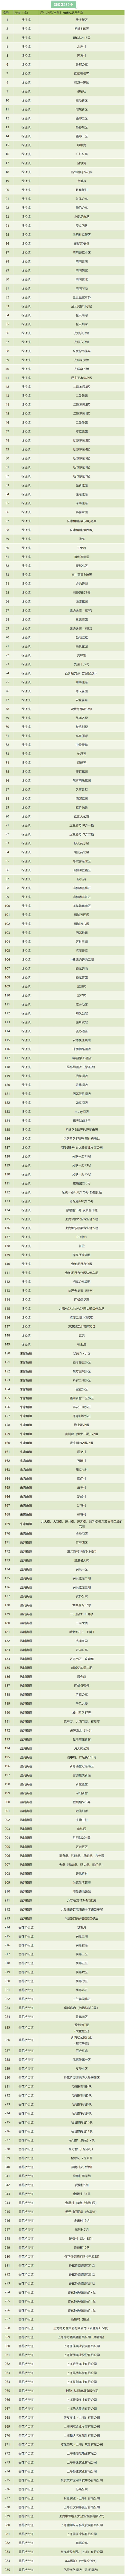 上海青浦公布第二批“三区”划分名单，其中防范区2061个